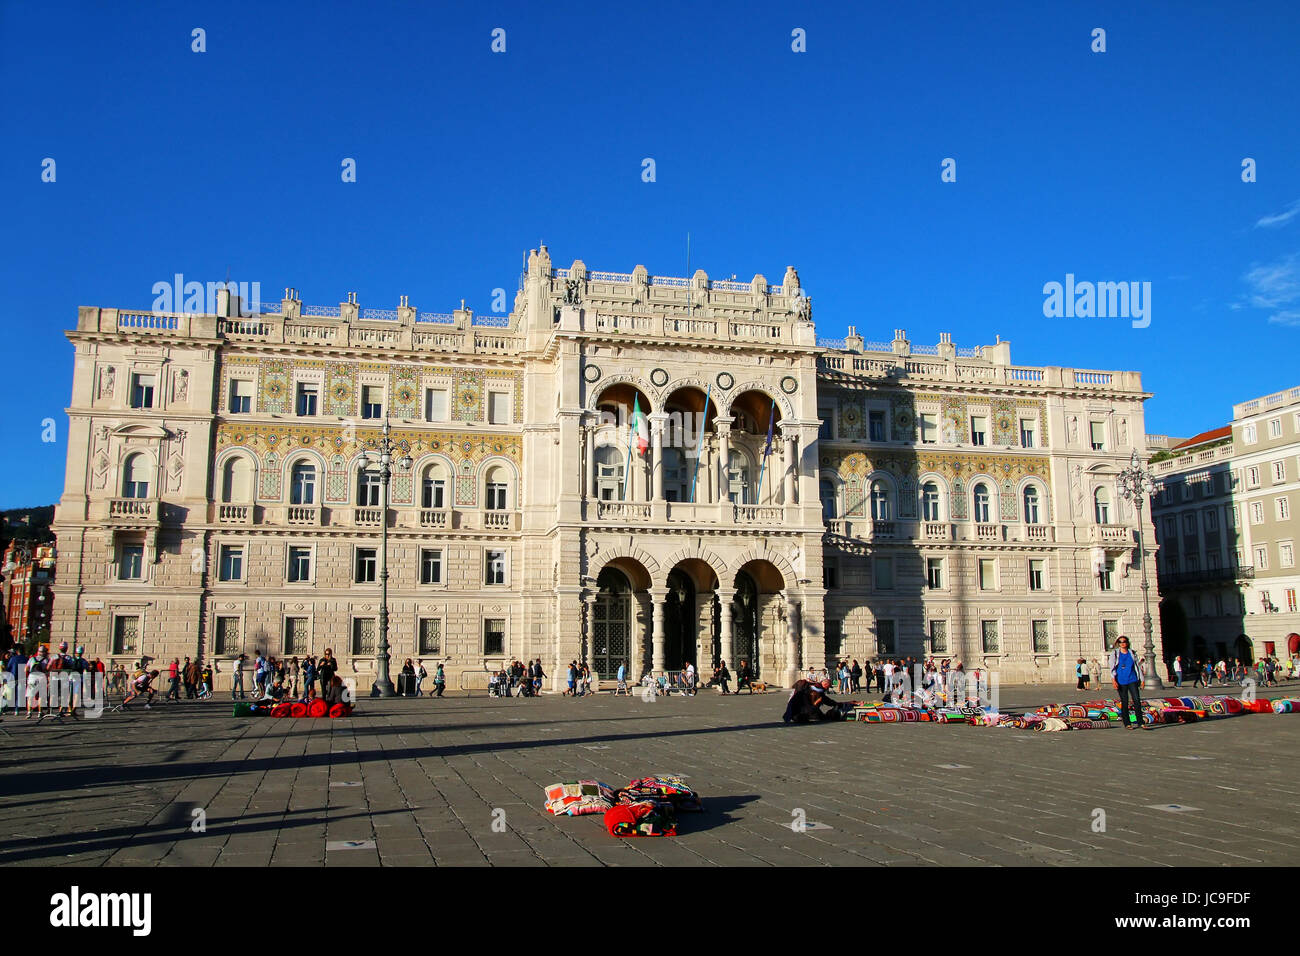 Palazzo del Governo sulla Piazza Unita d'Italia a Trieste, Italia. Trieste è la capitale della regione autonoma Friuli Venezia Giulia Foto Stock